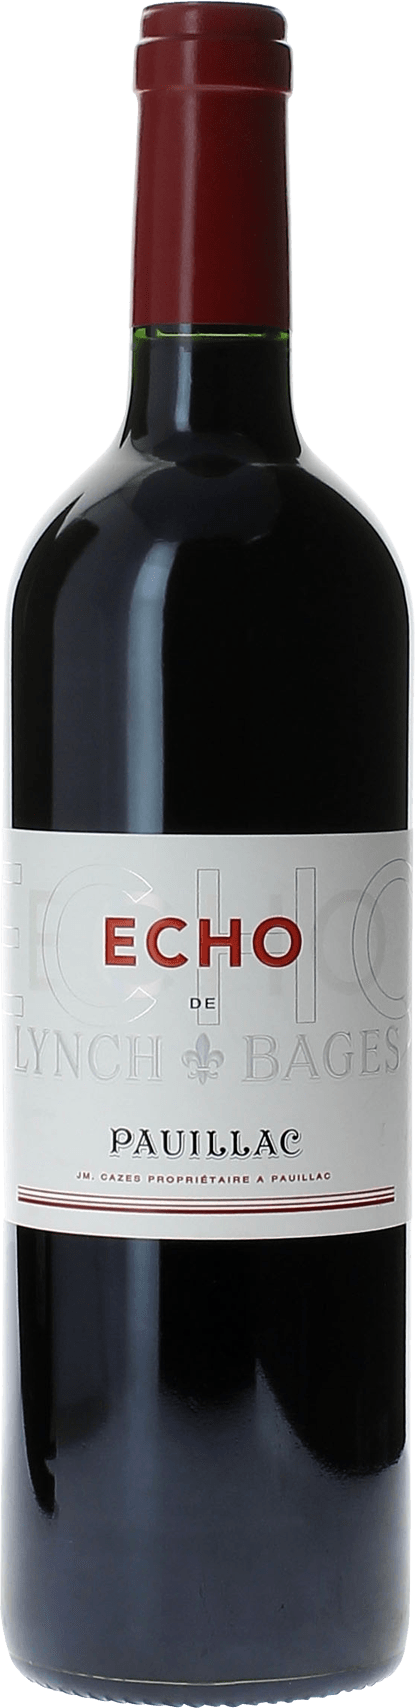 Echo lynch bages 2008 2me vin de LYNCH BAGES Pauillac, Bordeaux rouge